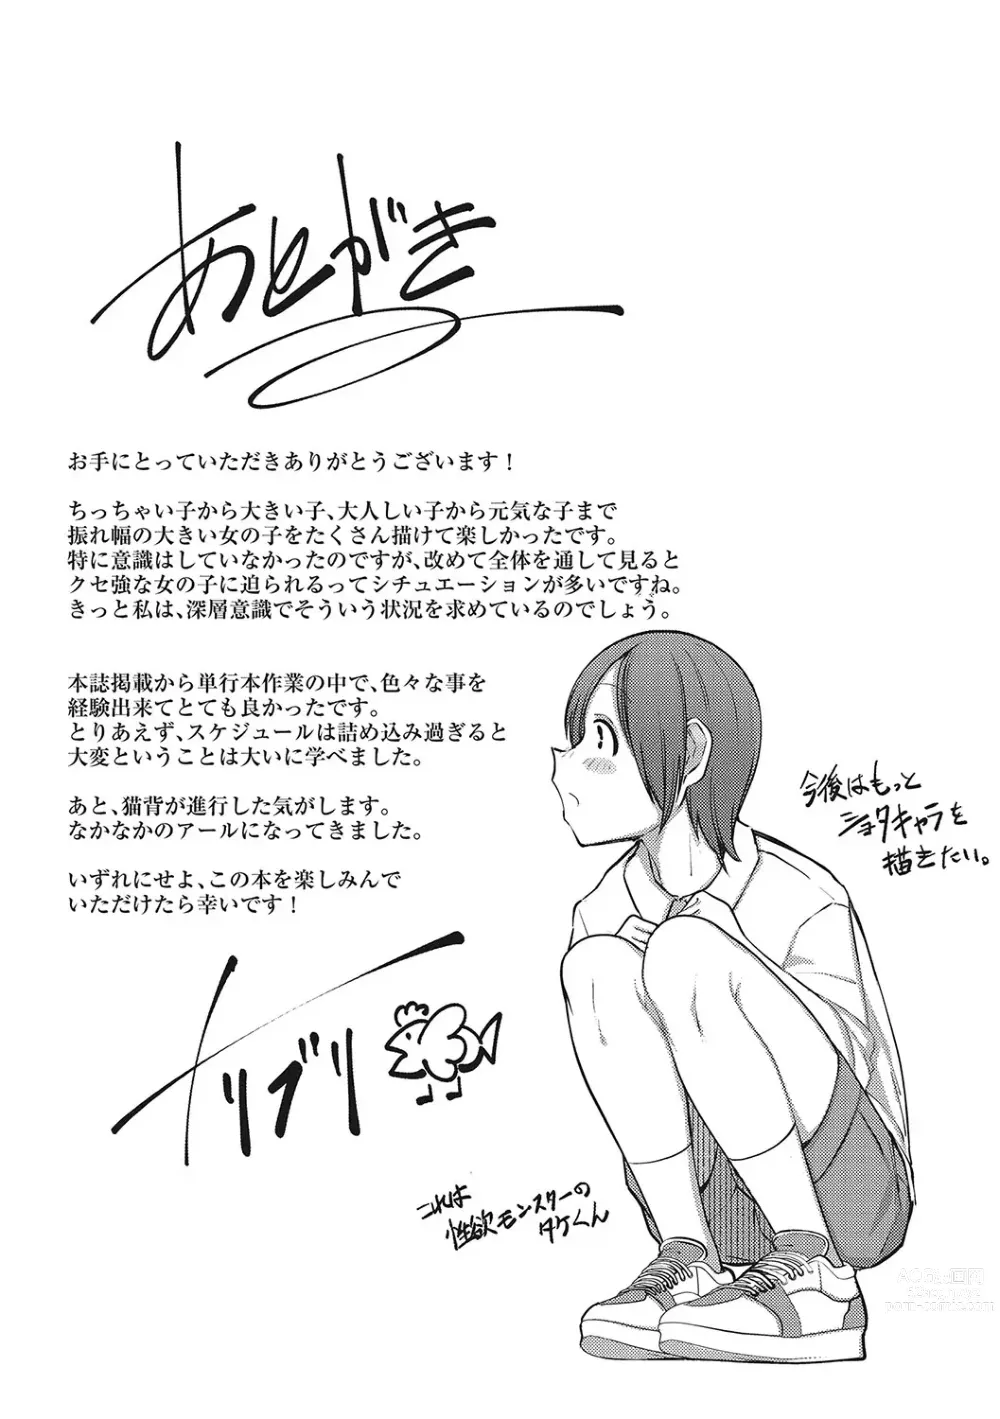 Page 202 of manga Hatsujou Girl ga Arawareta!